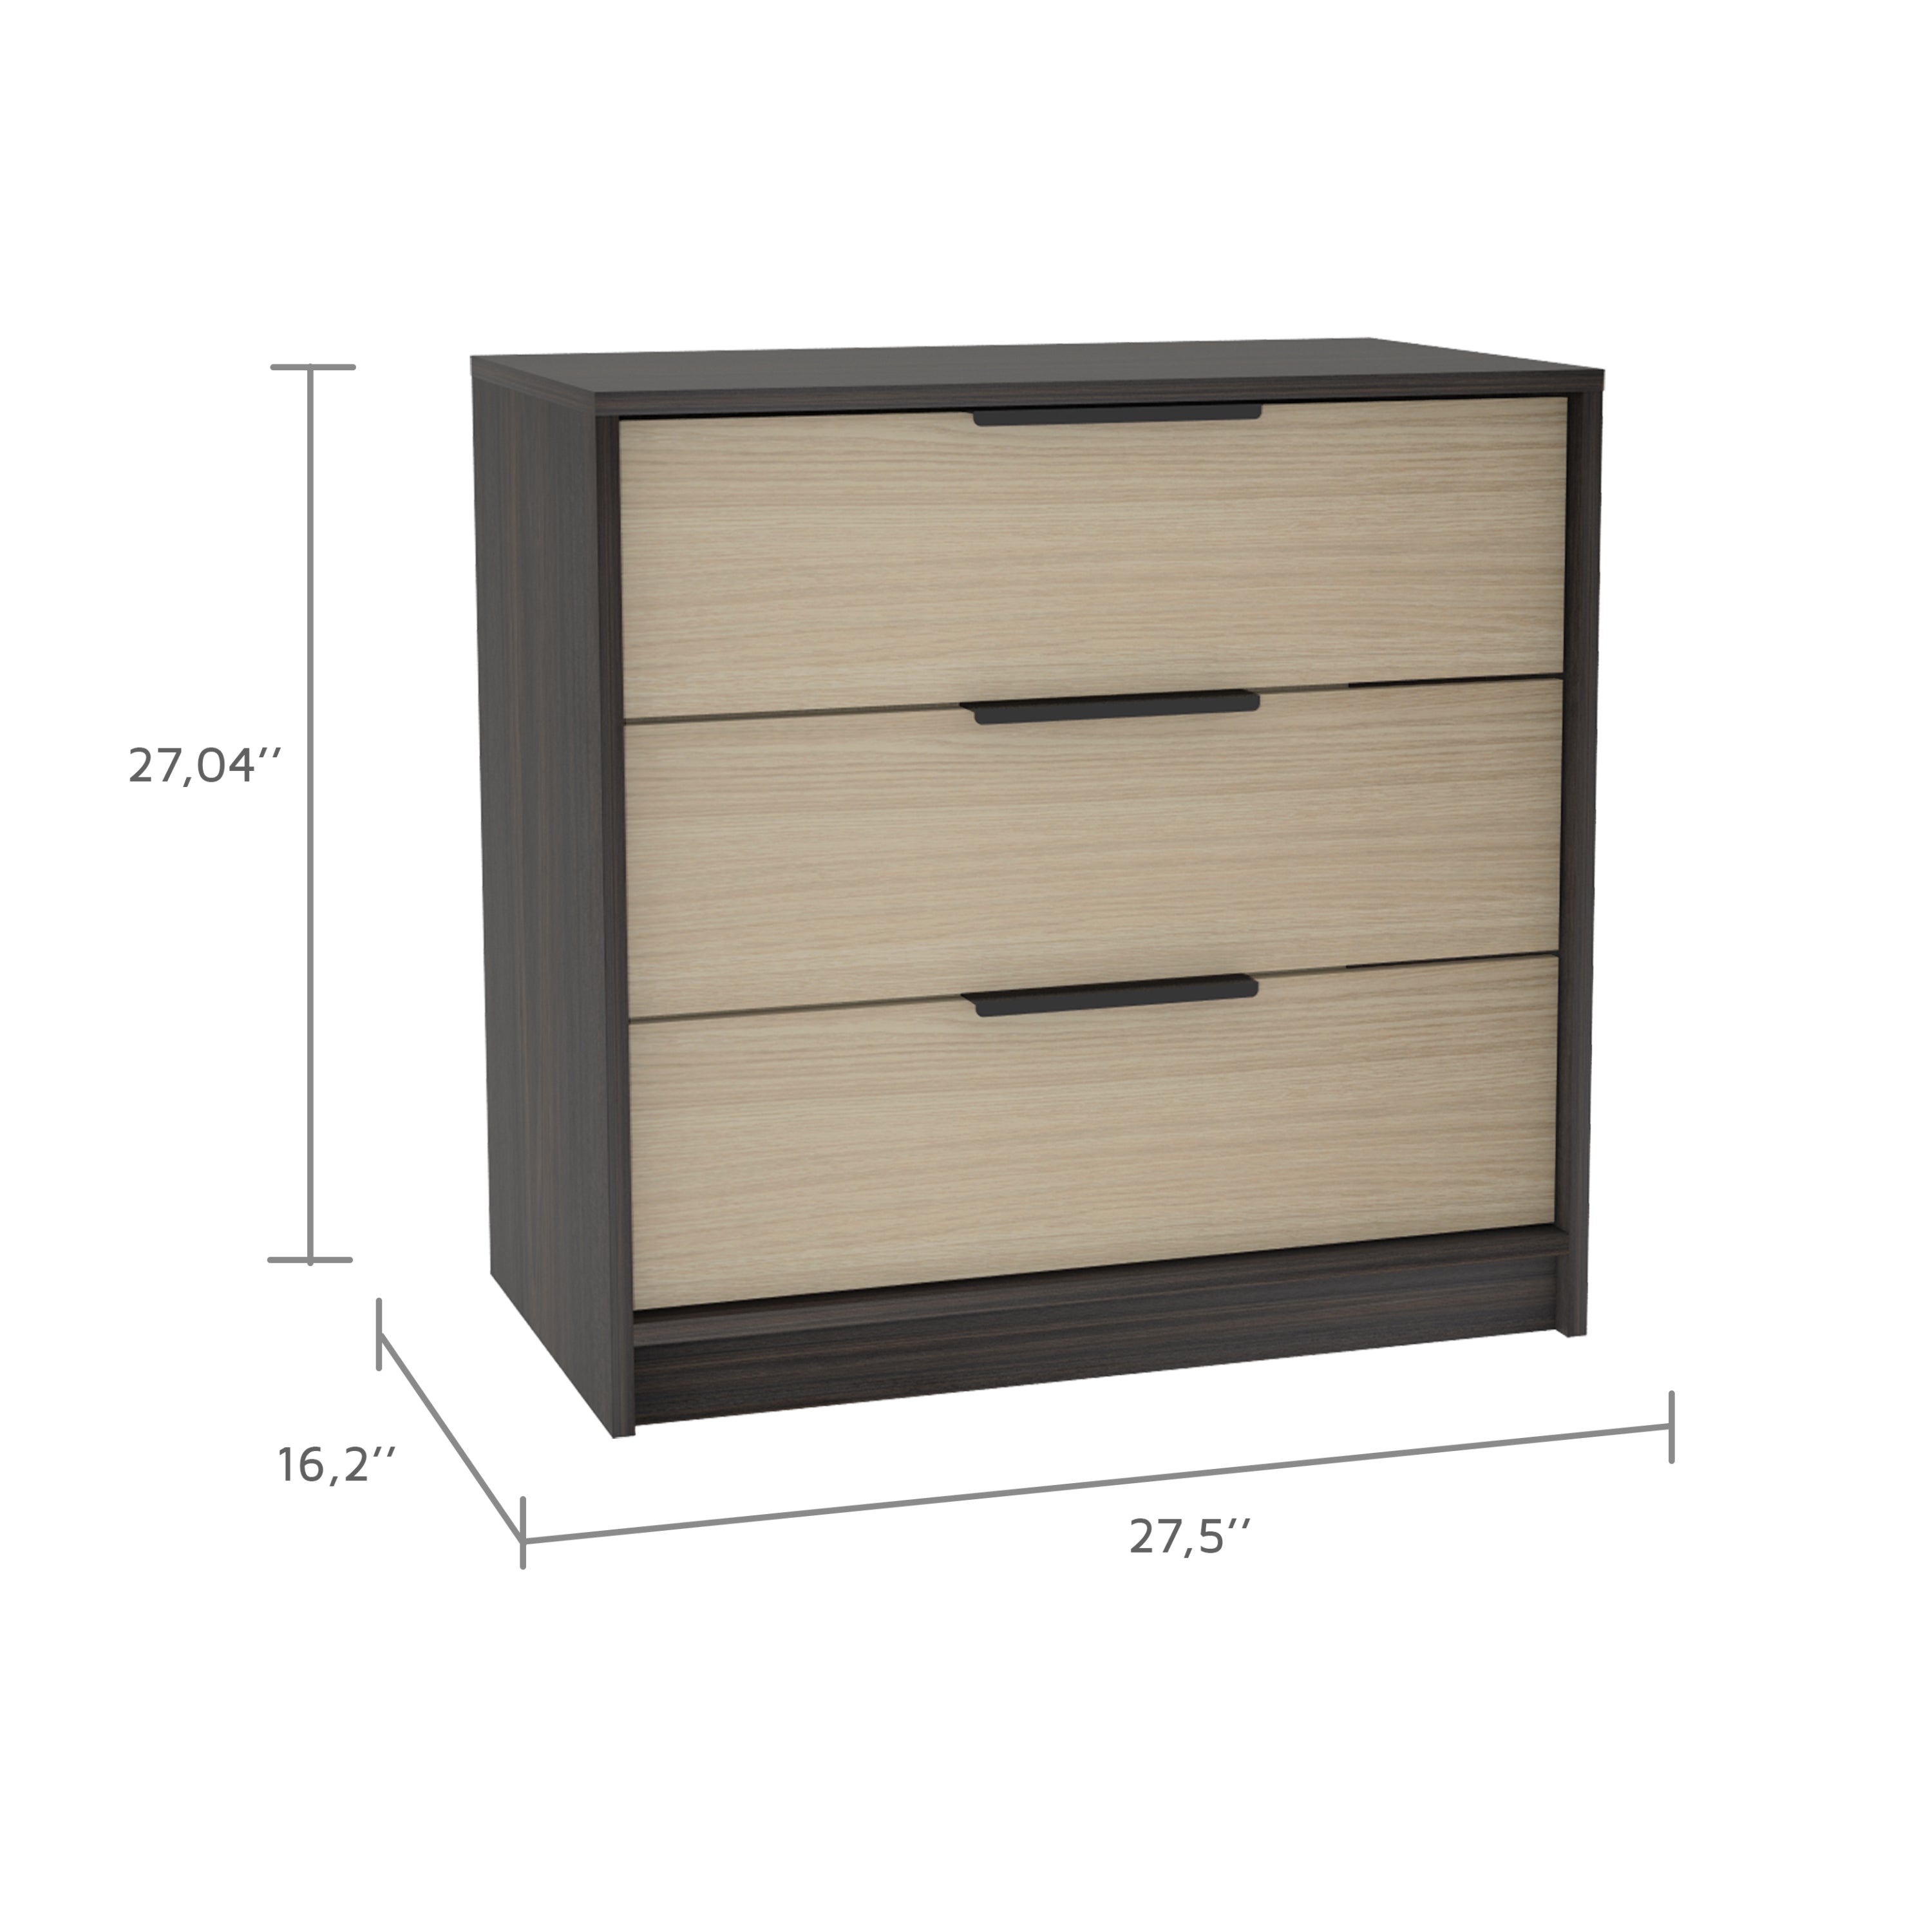 3-Drawer Rectangle Dresser - Black Wengue and Light Oak